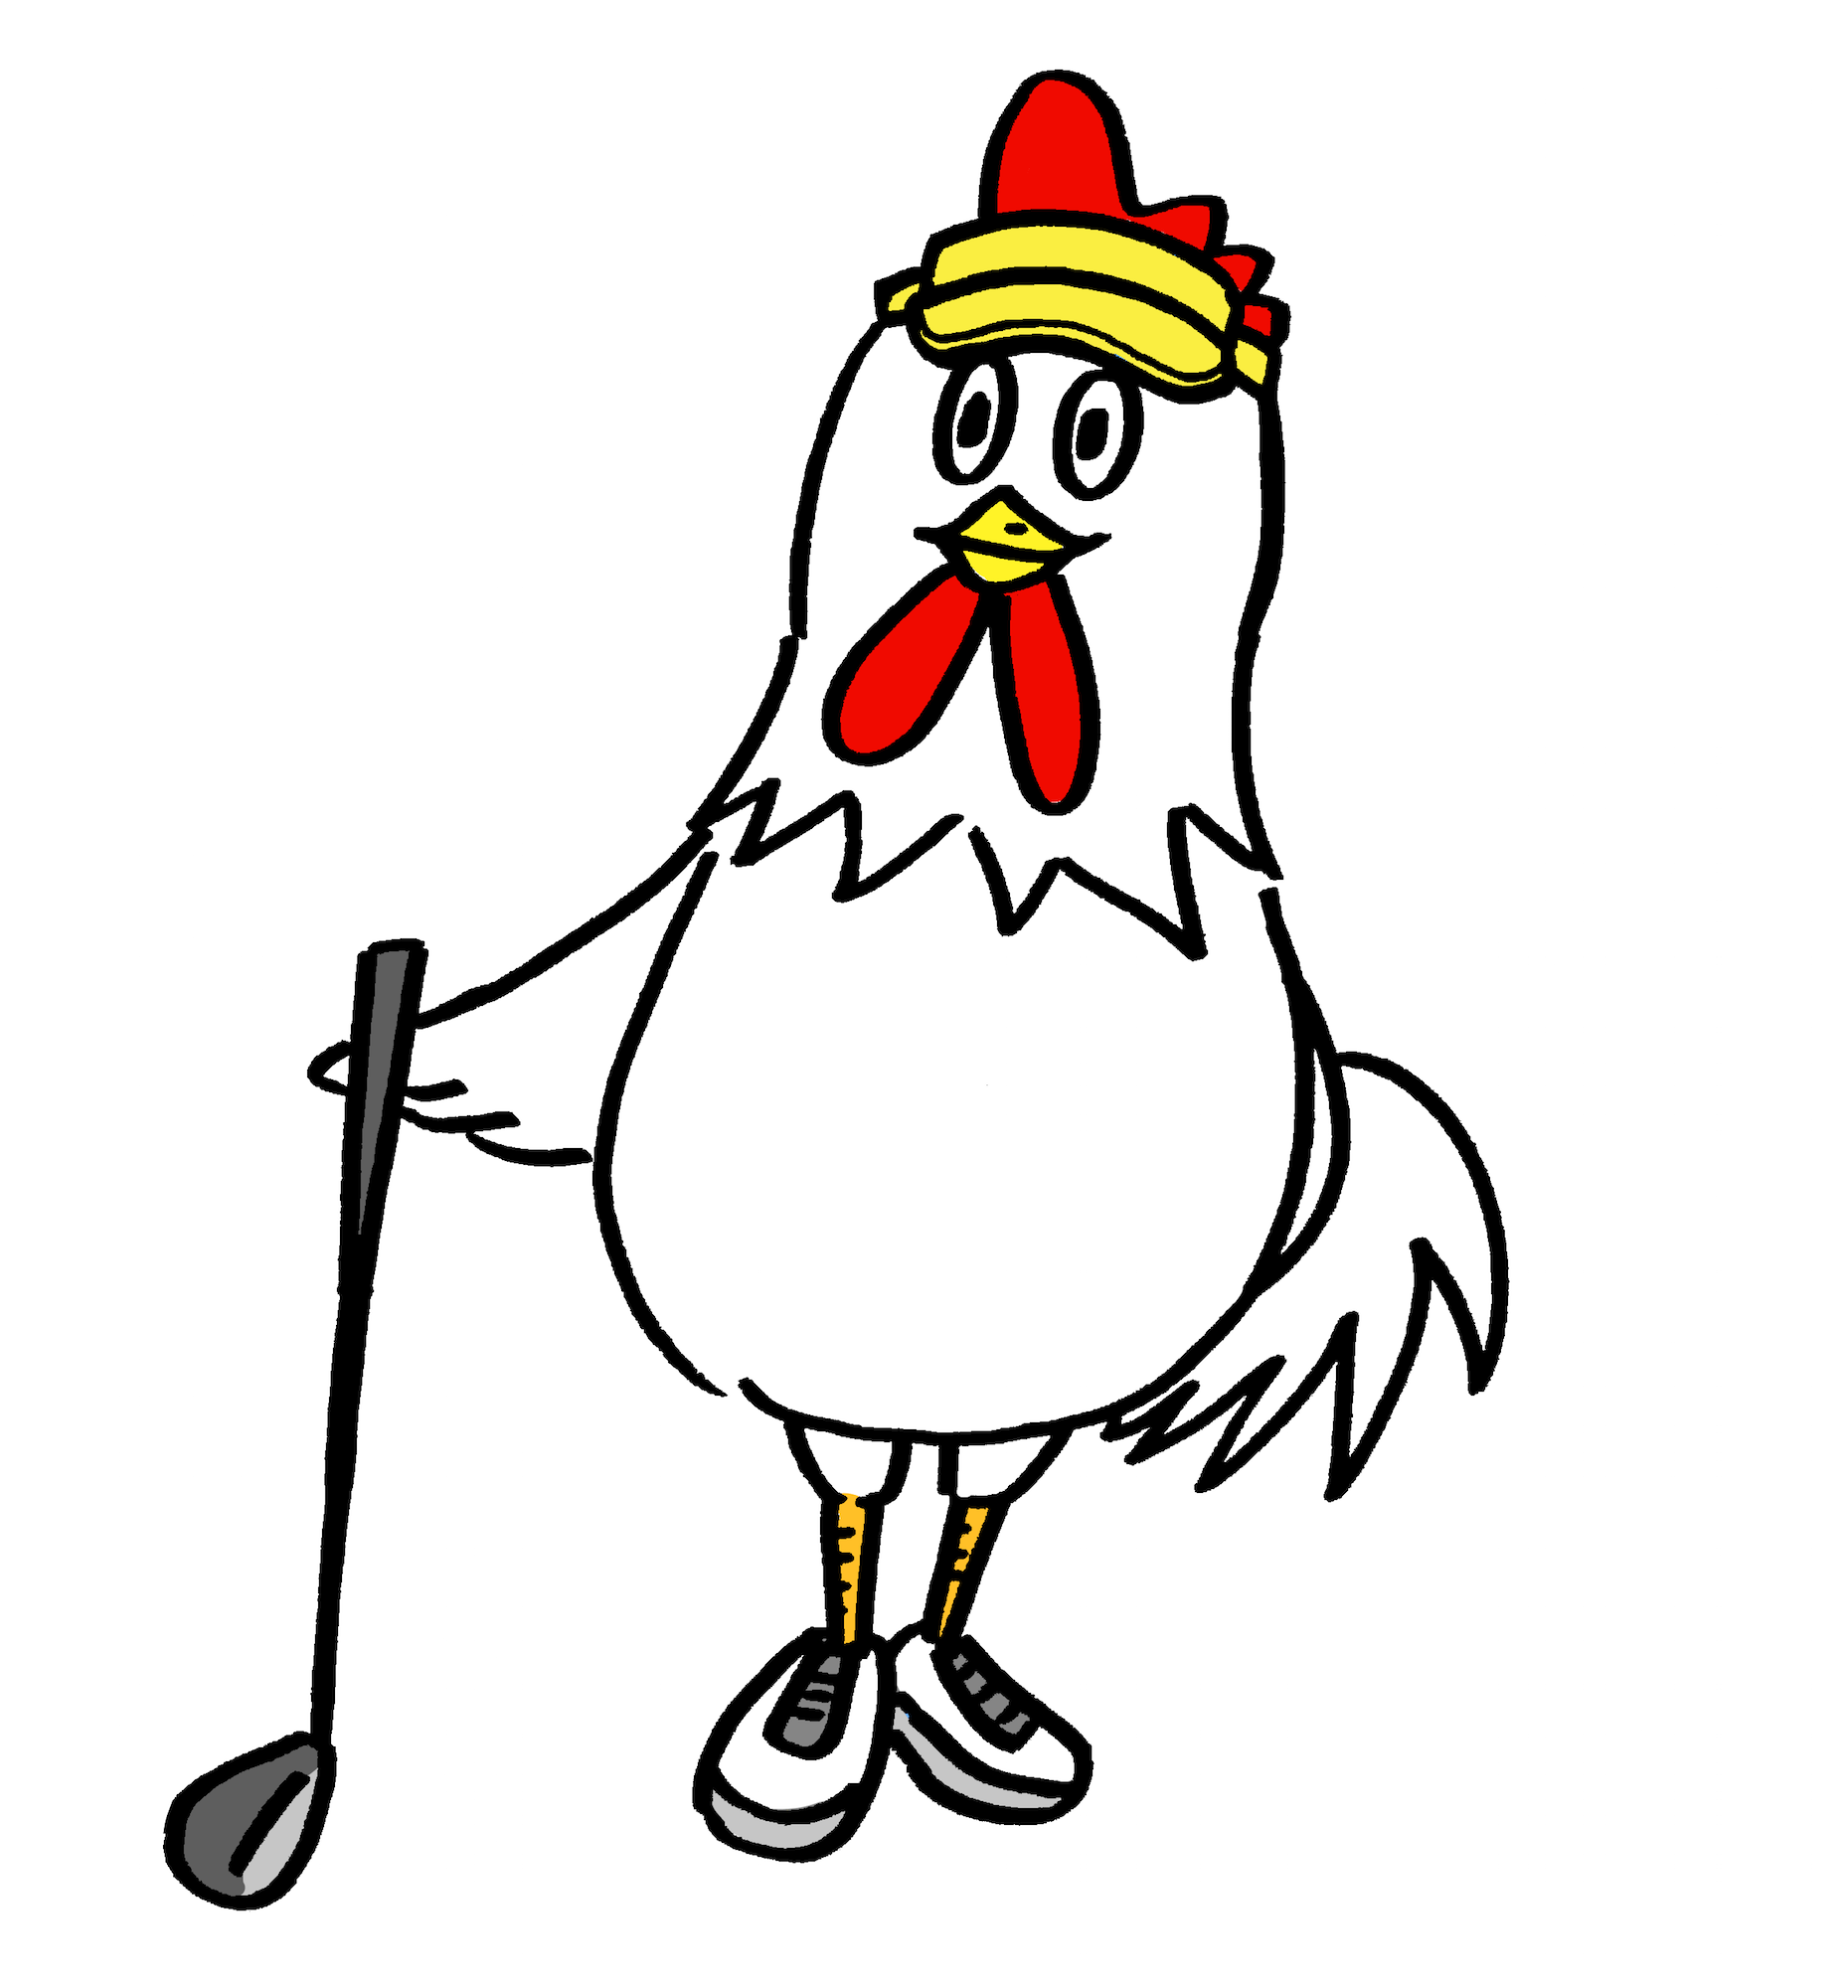 ゴルフをする可愛い鶏ニワトリ無料年賀状素材酉年 無料イラスト配布サイトマンガトップ